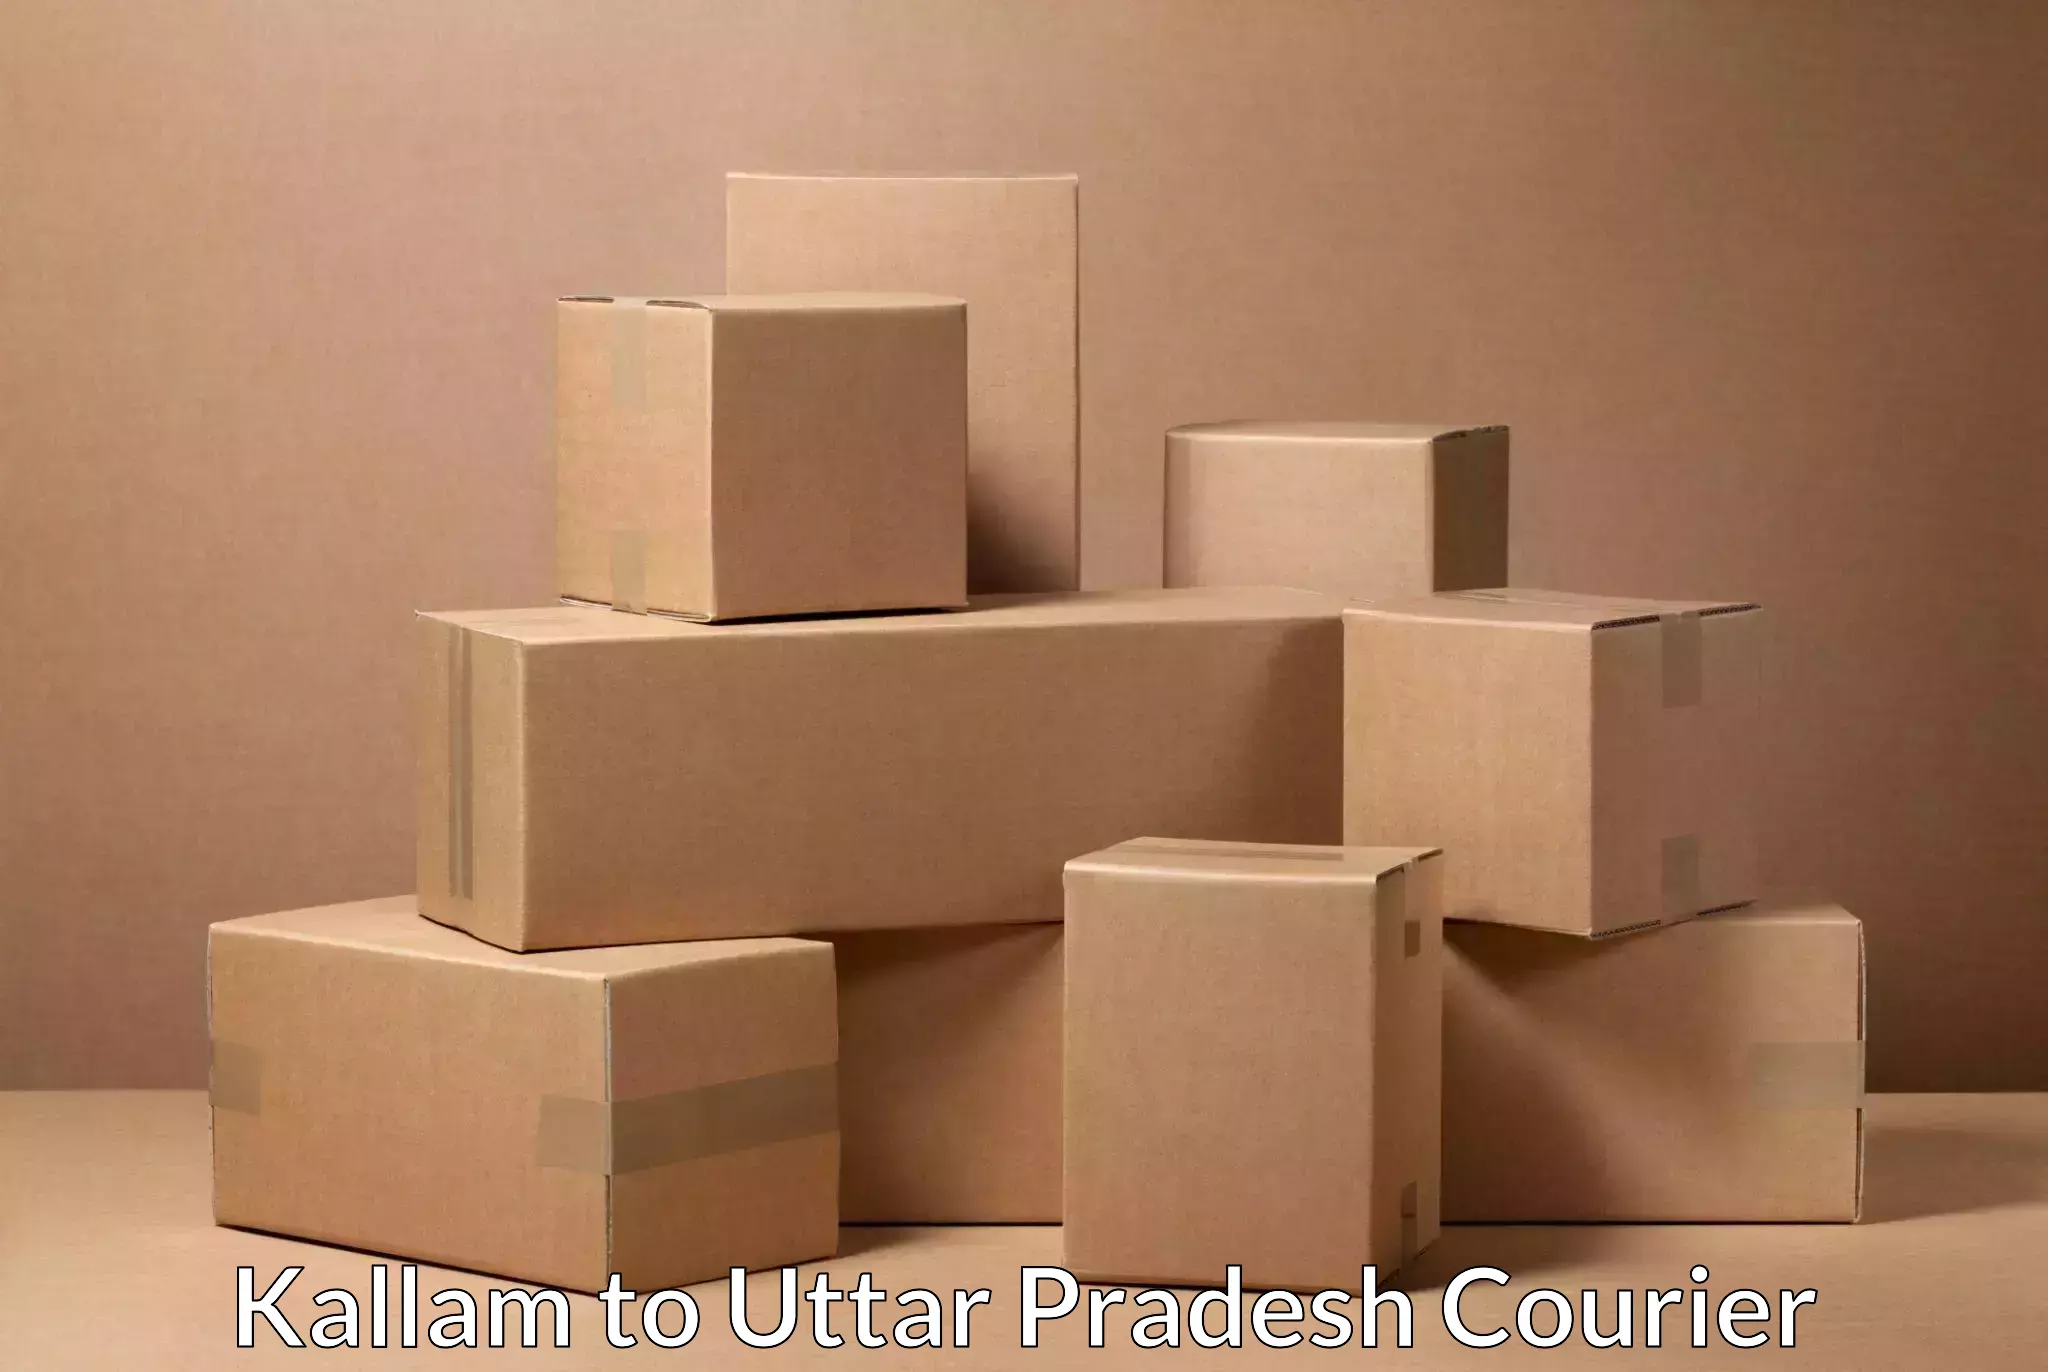 Efficient parcel service Kallam to Afzalgarh